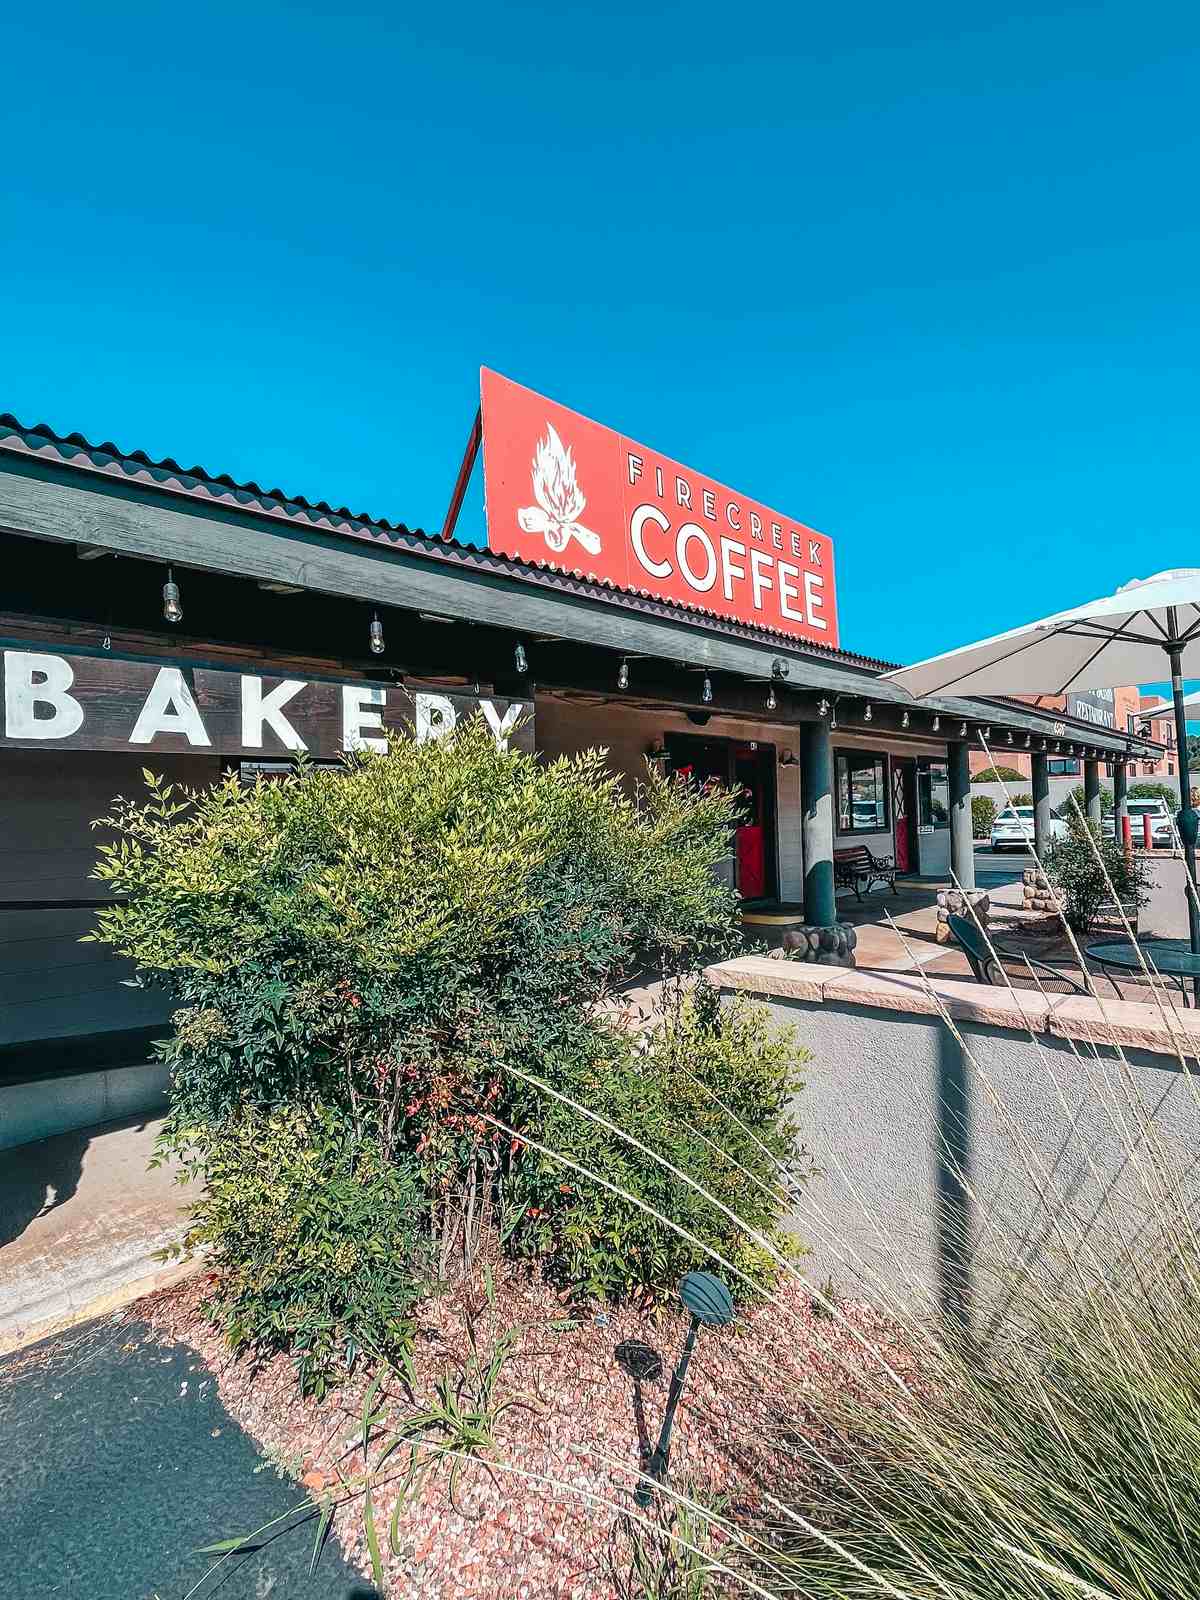 Firecreek Coffee coffee shop in Sedona Arizona